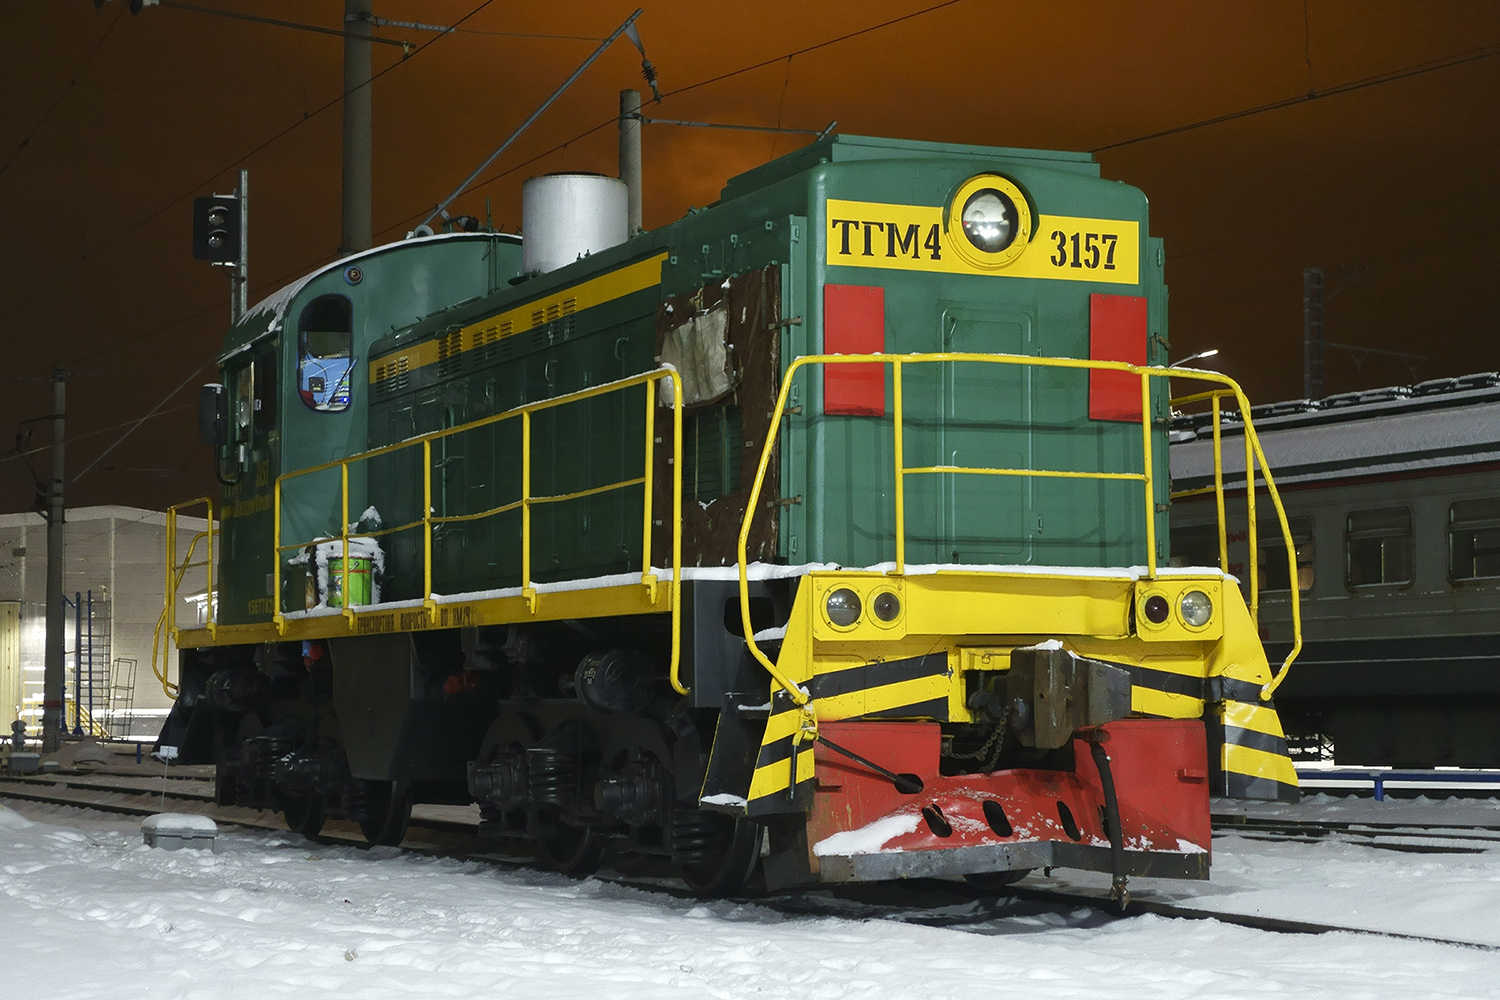 ТГМ4-3157